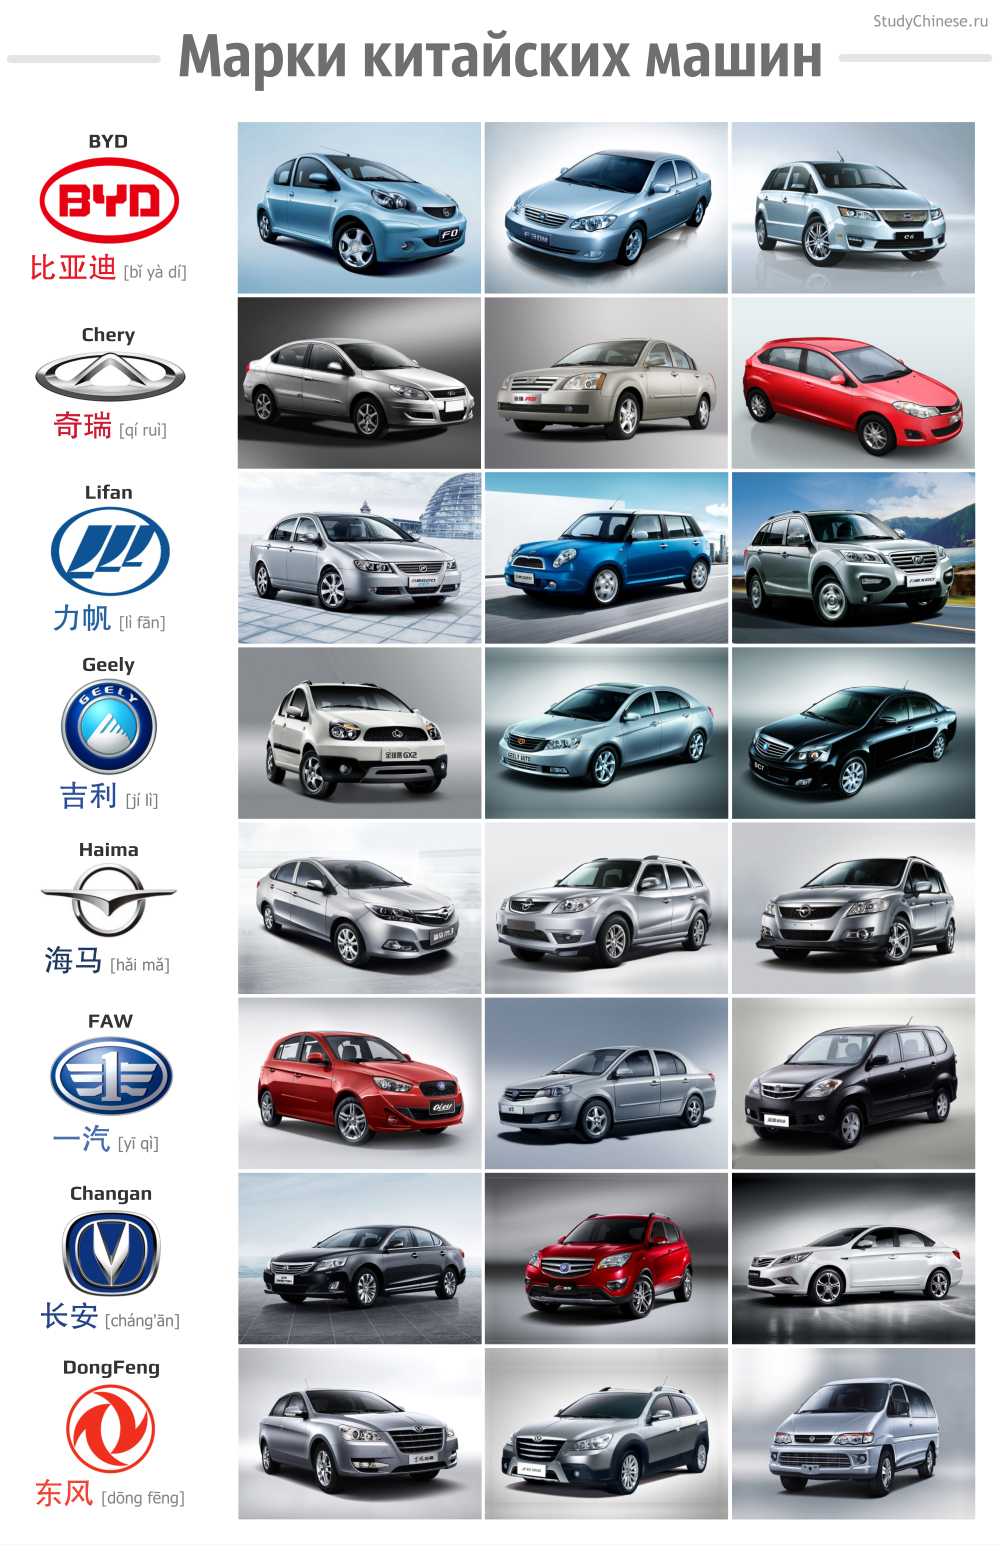 Популярные марки китайских машин